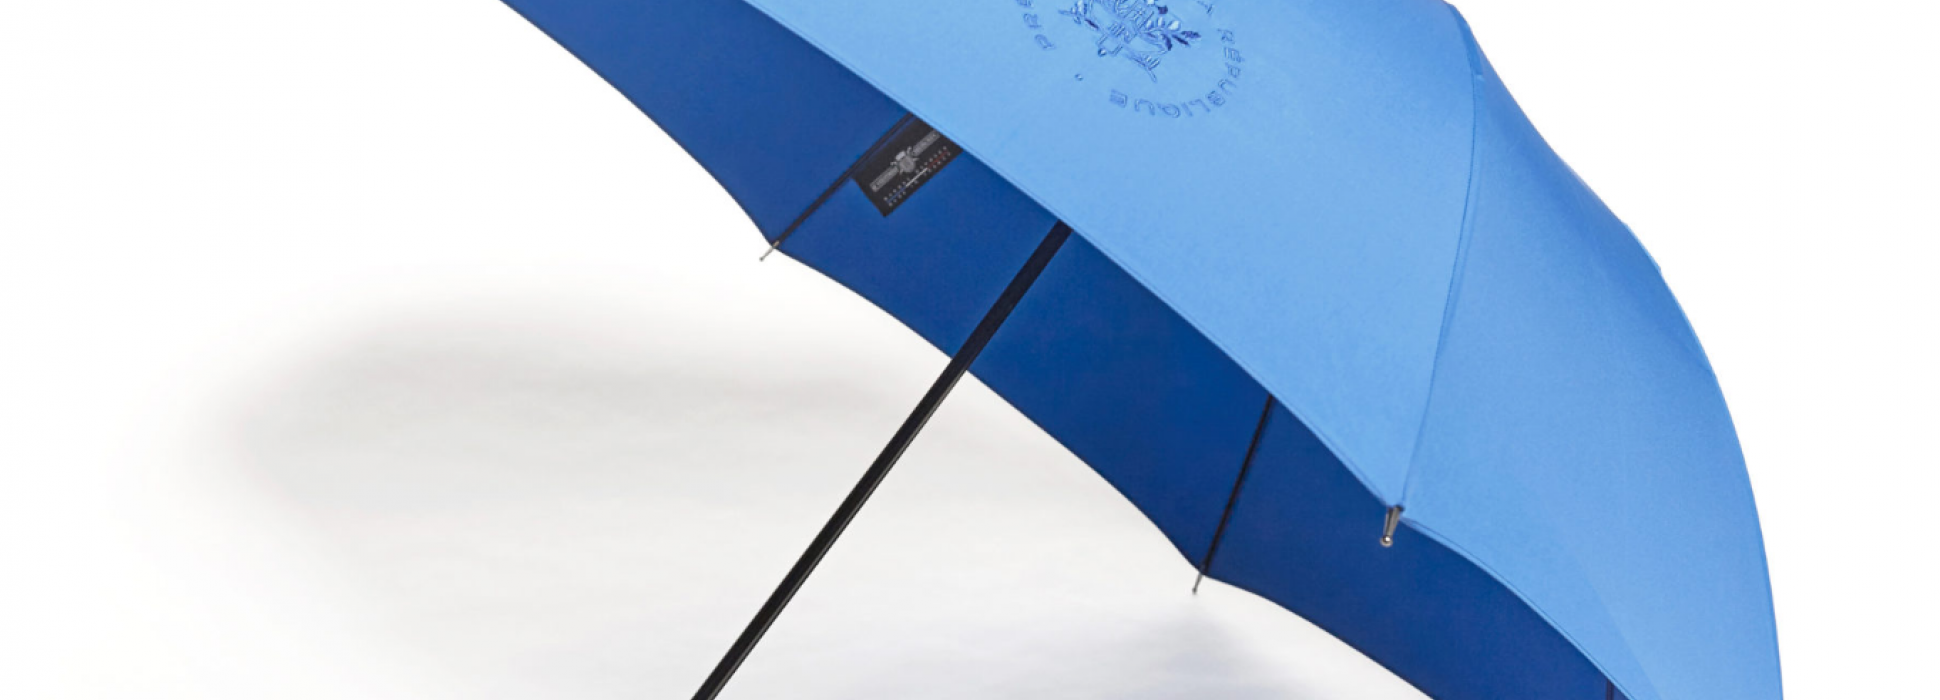 Le Parapluie de Cherbourg entre à l’Elysée